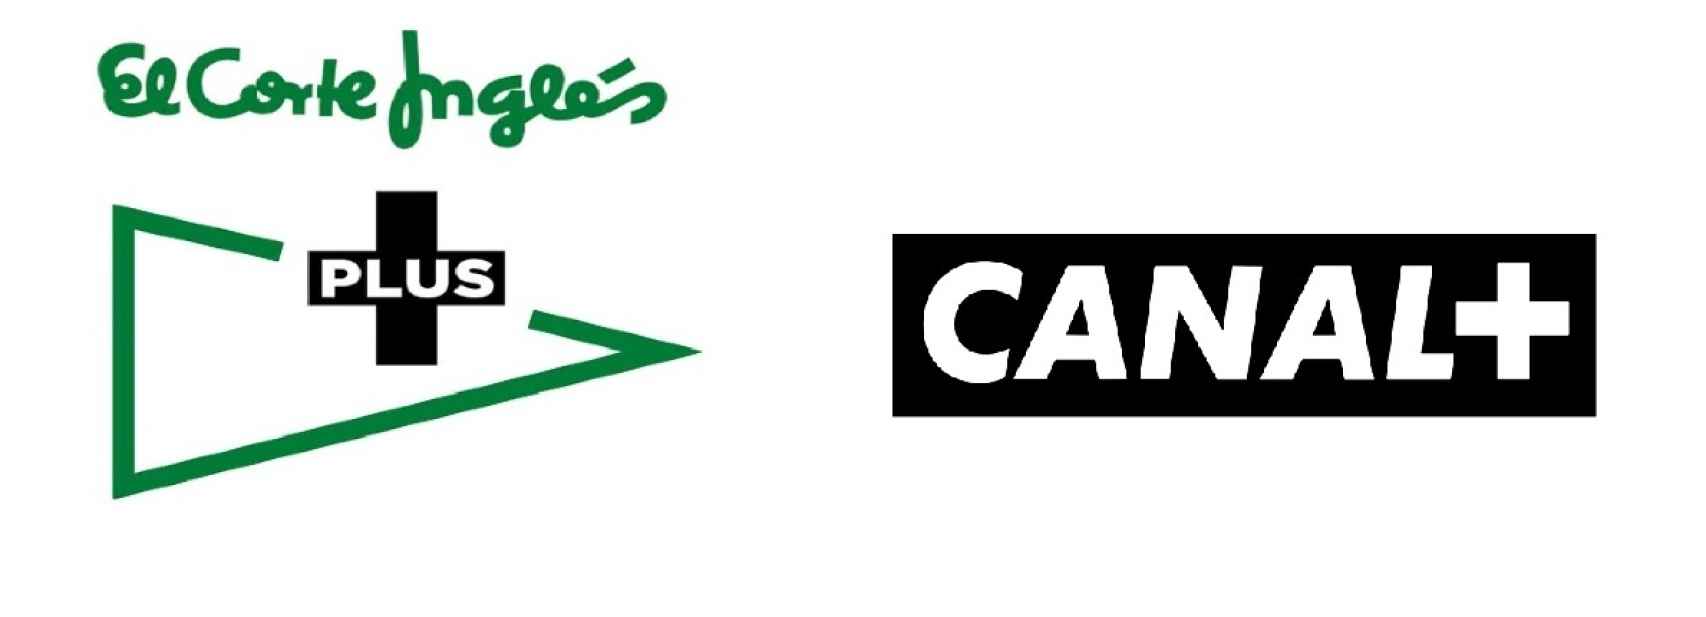 Logos de El Corte Inglés Plus y Canal+.